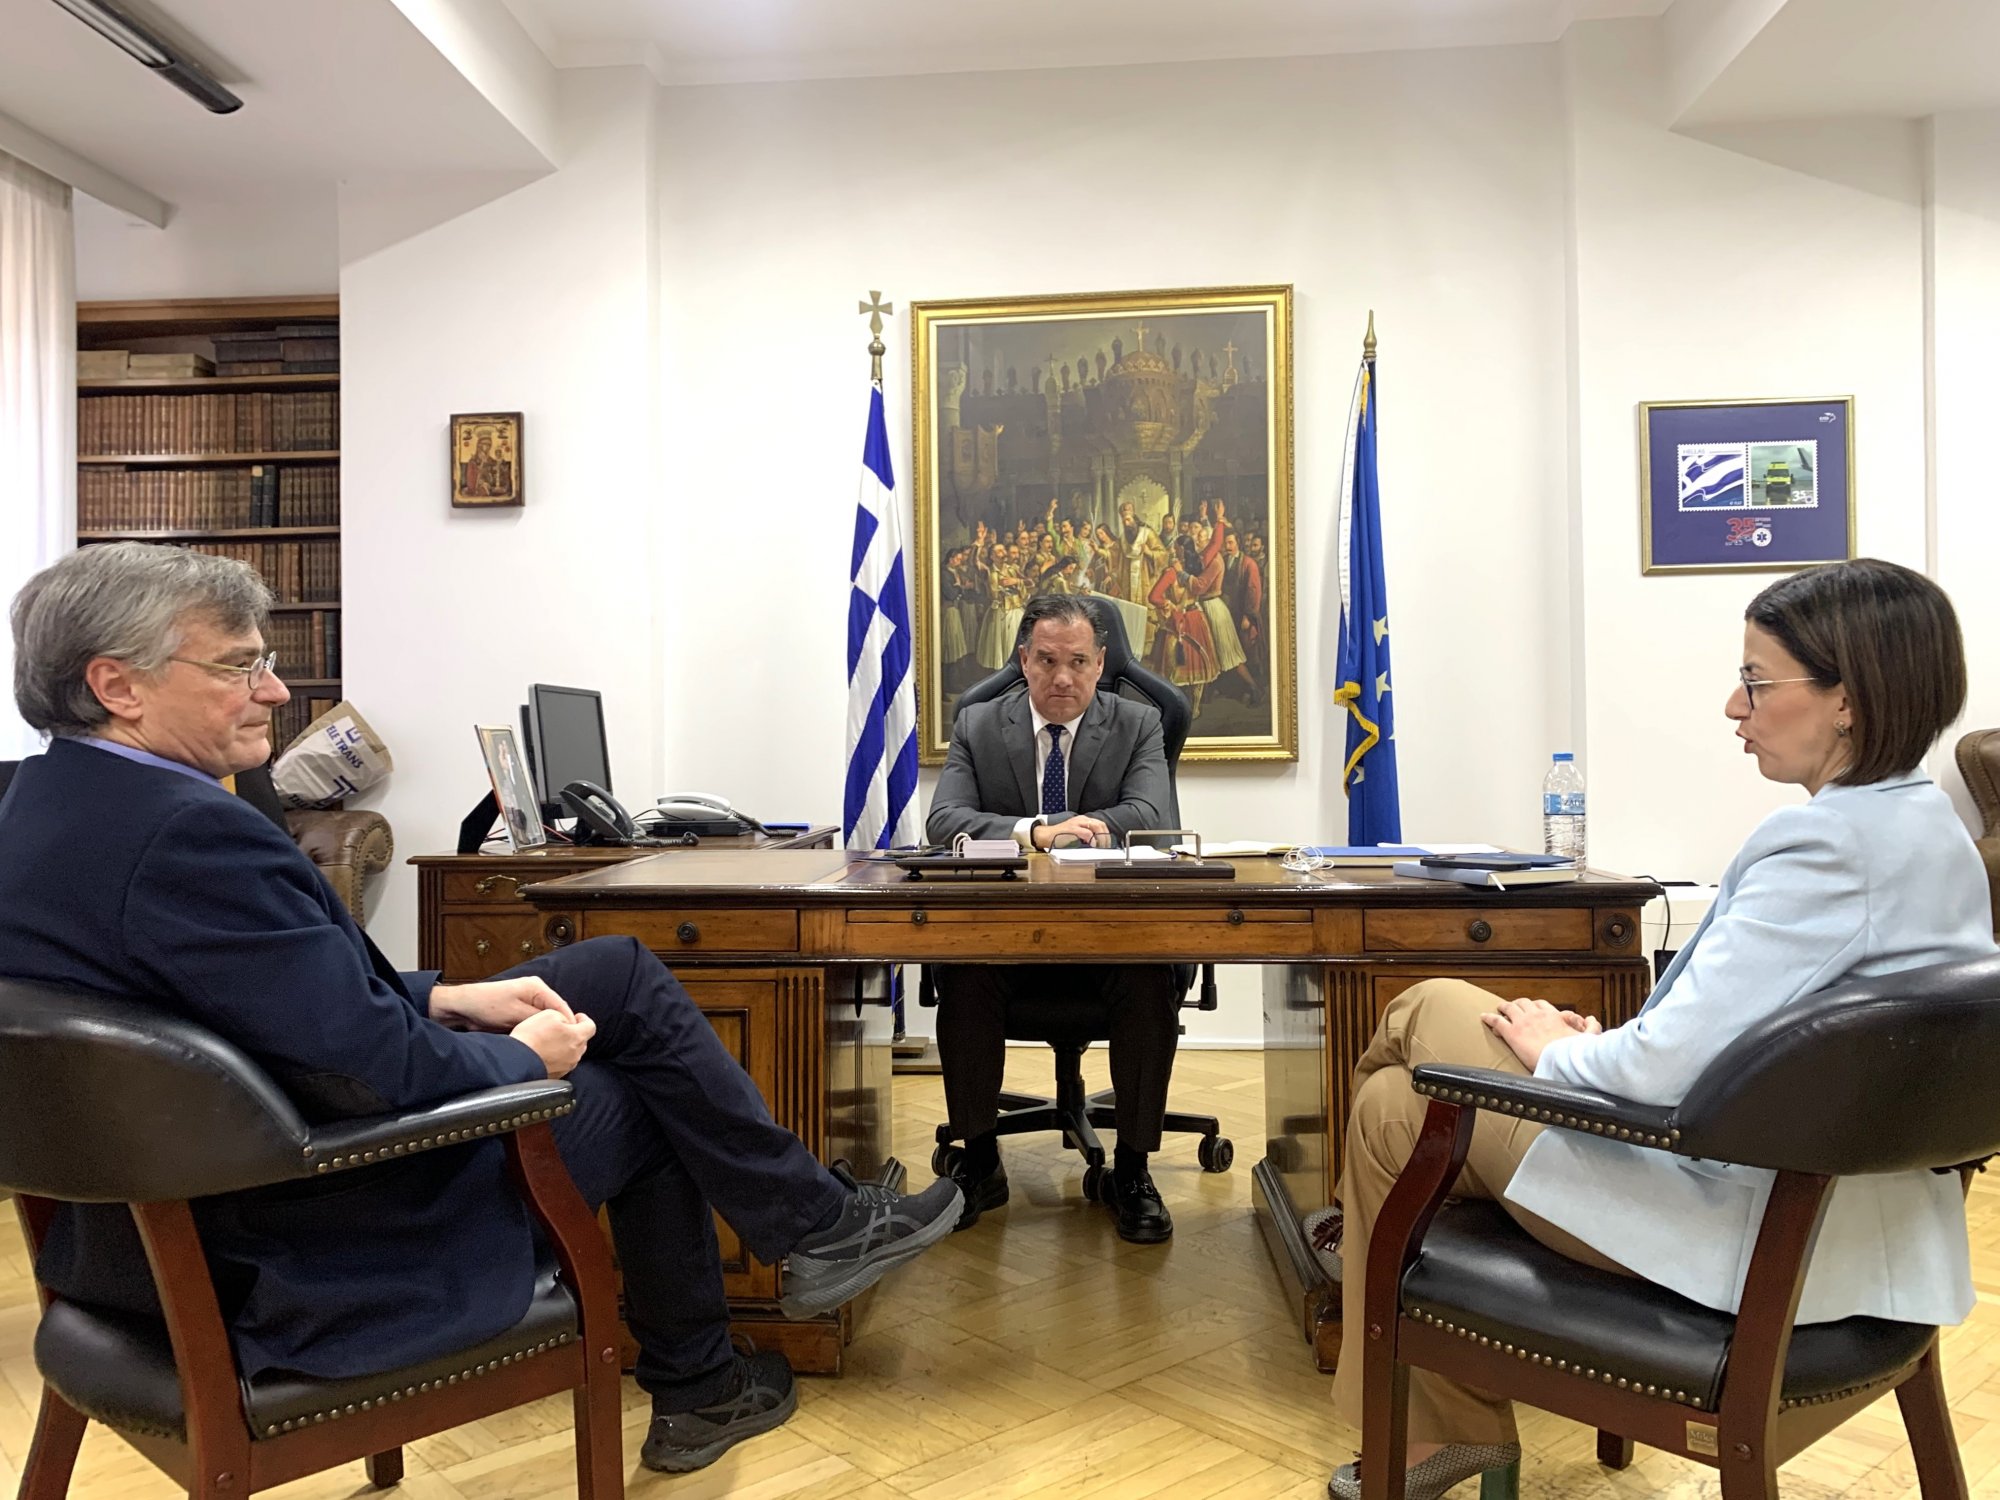 Τον Σωτήρη Τσιόδρα συνάντησε η νέα ηγεσία του υπουργείου Υγείας - Στο επίκεντρο ο κορονοϊός